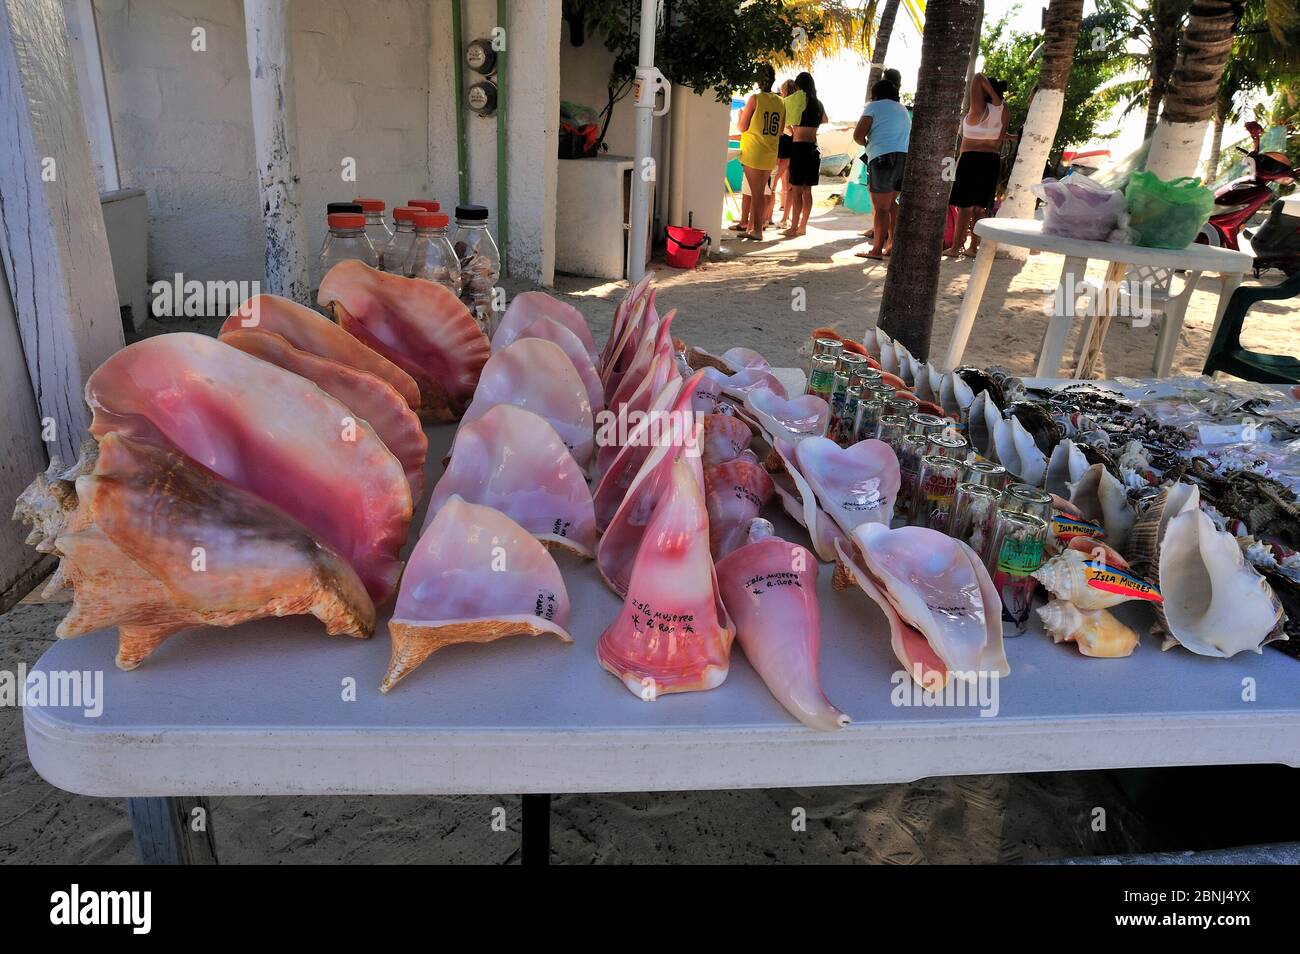 Animales marinos como conchas y estrellas de mar / estrellas de mar se recogen para ser vendidos como souvenirs a los turistas, Isla de mujeres, península de Yucatán, México Foto de stock